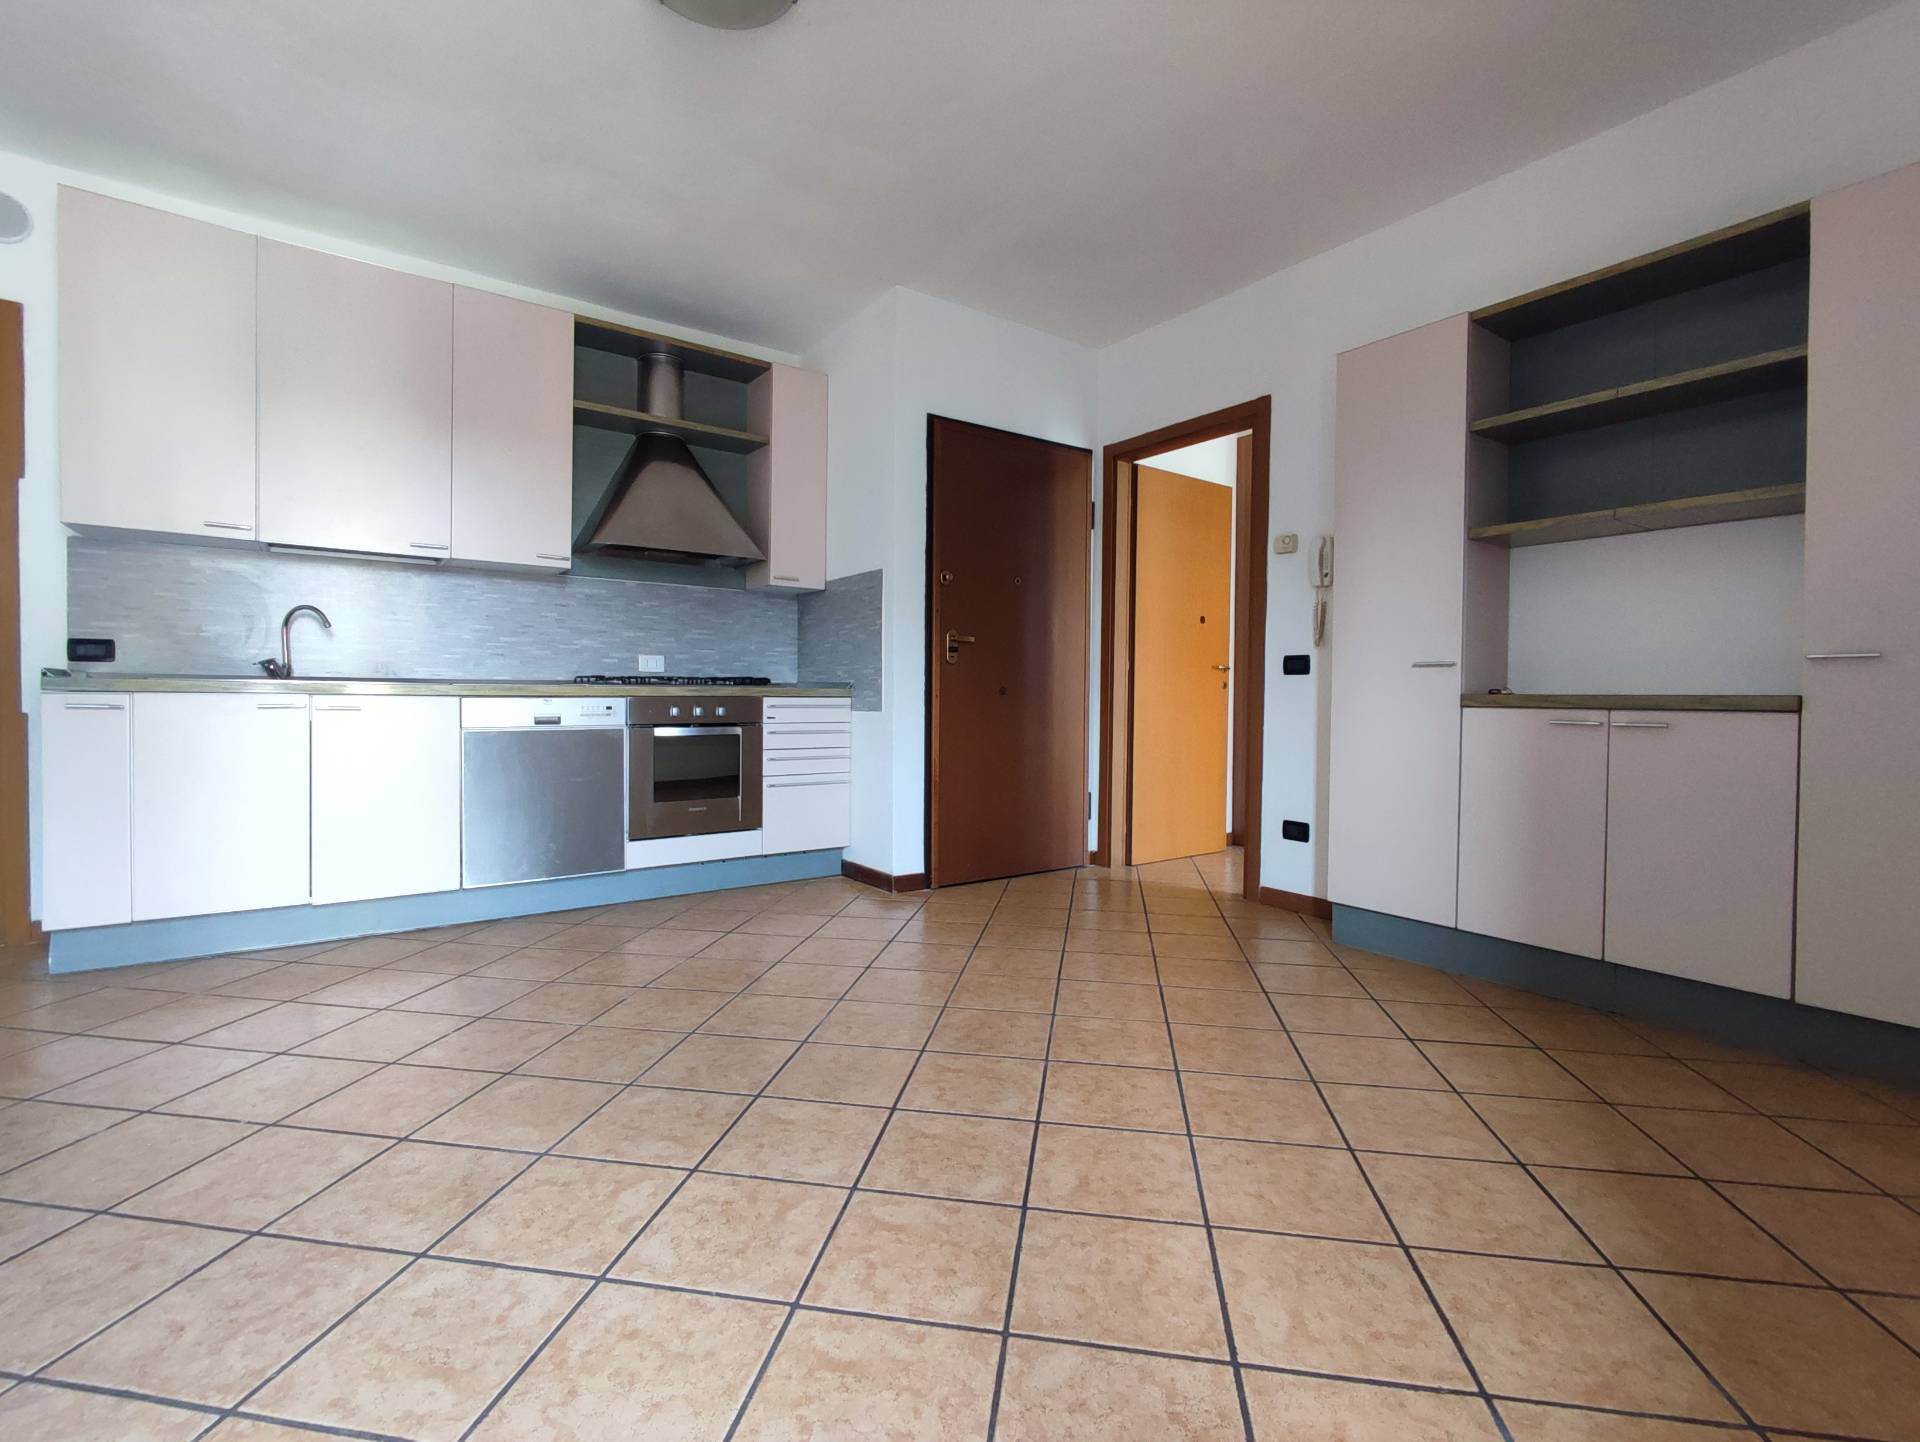 Appartamento in affitto a Castelli Calepio, 2 locali, prezzo € 590 | PortaleAgenzieImmobiliari.it